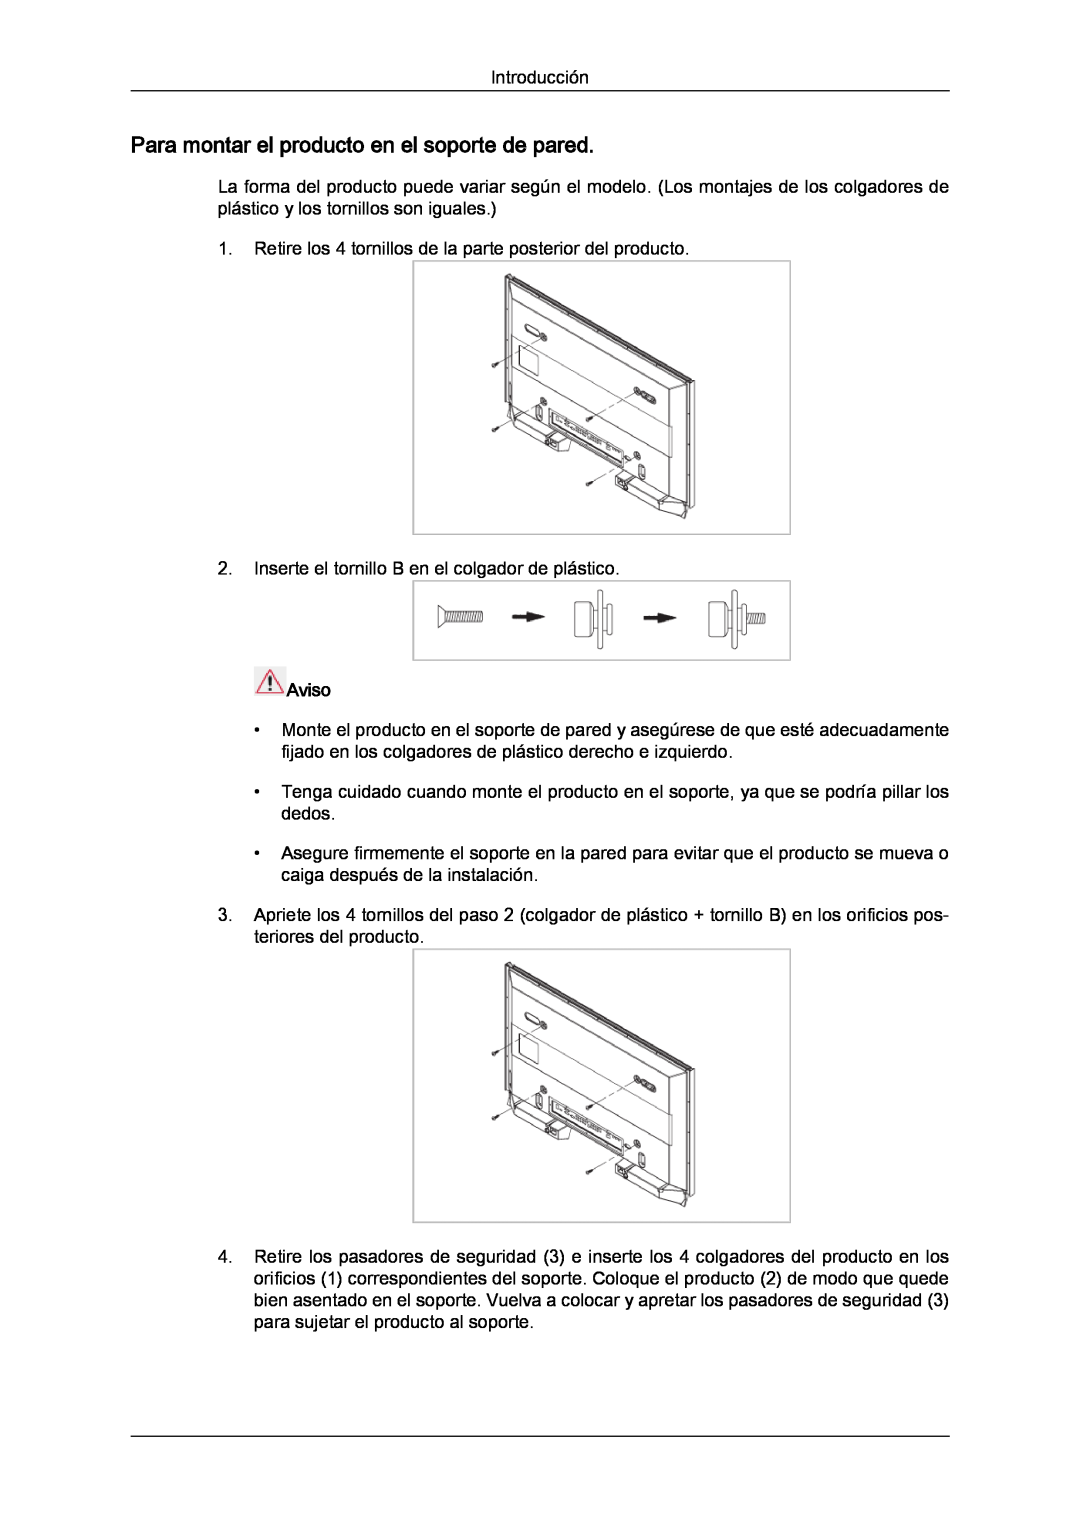 Samsung LH82TCUMBG/EN, LH70TCUMBG/EN manual Para montar el producto en el soporte de pared, Aviso 